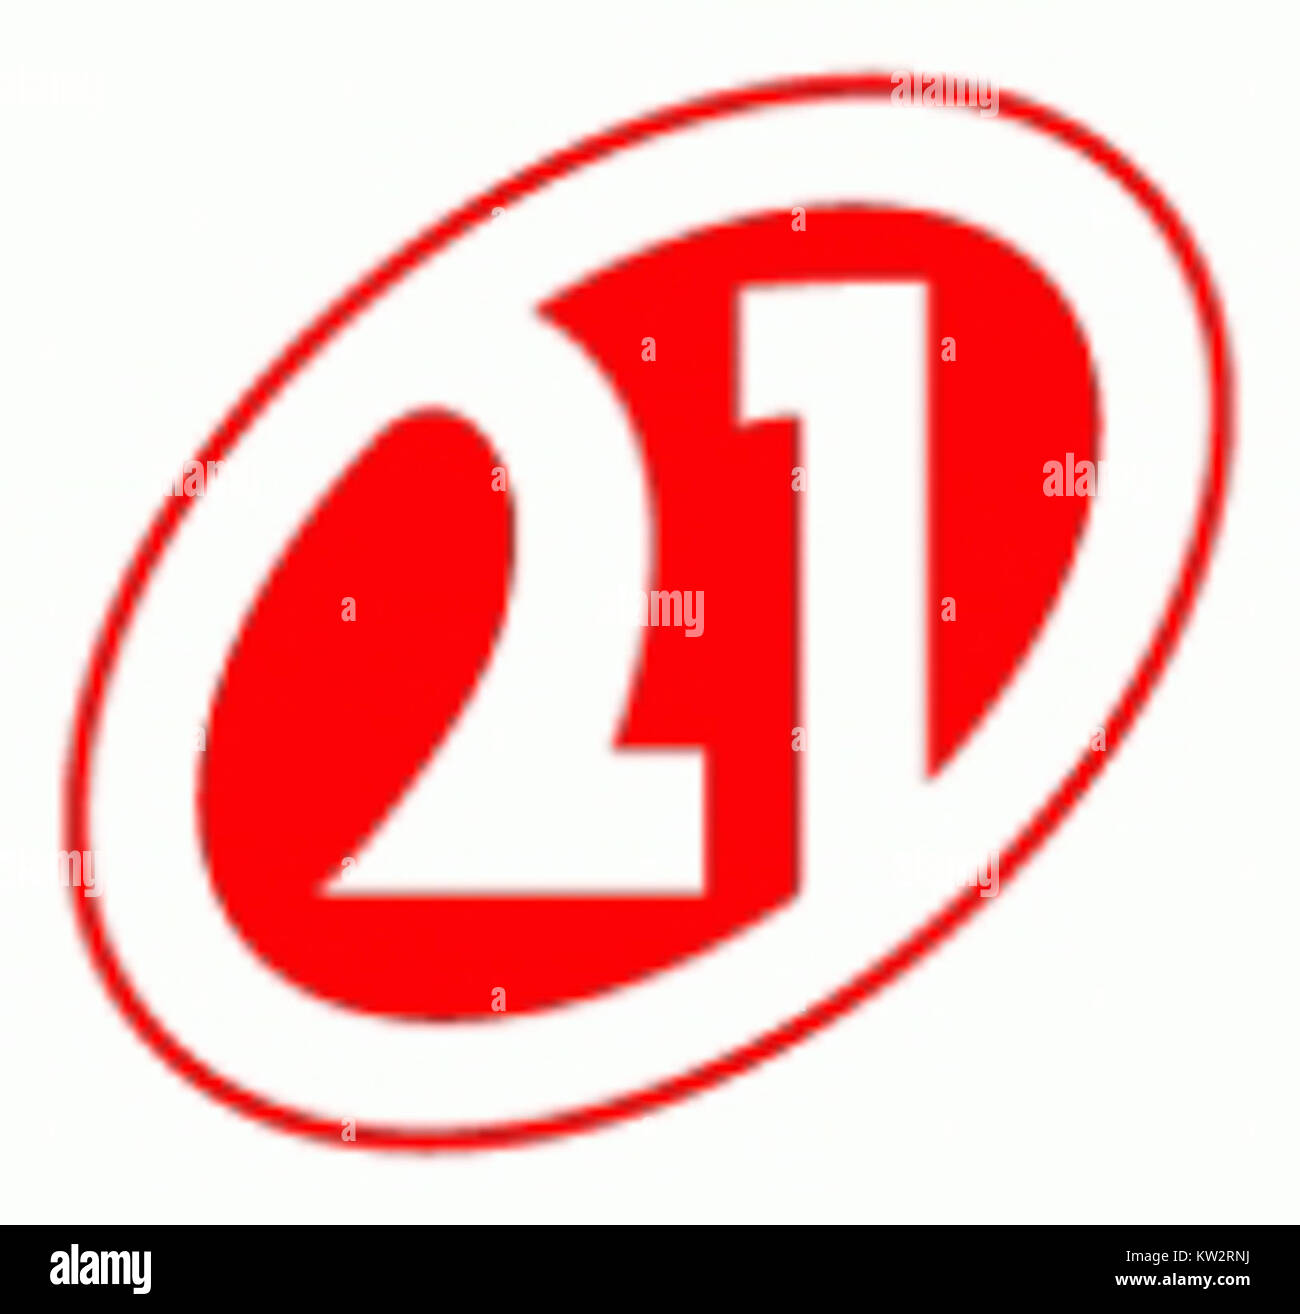 Rede 21 logo Stock Photo